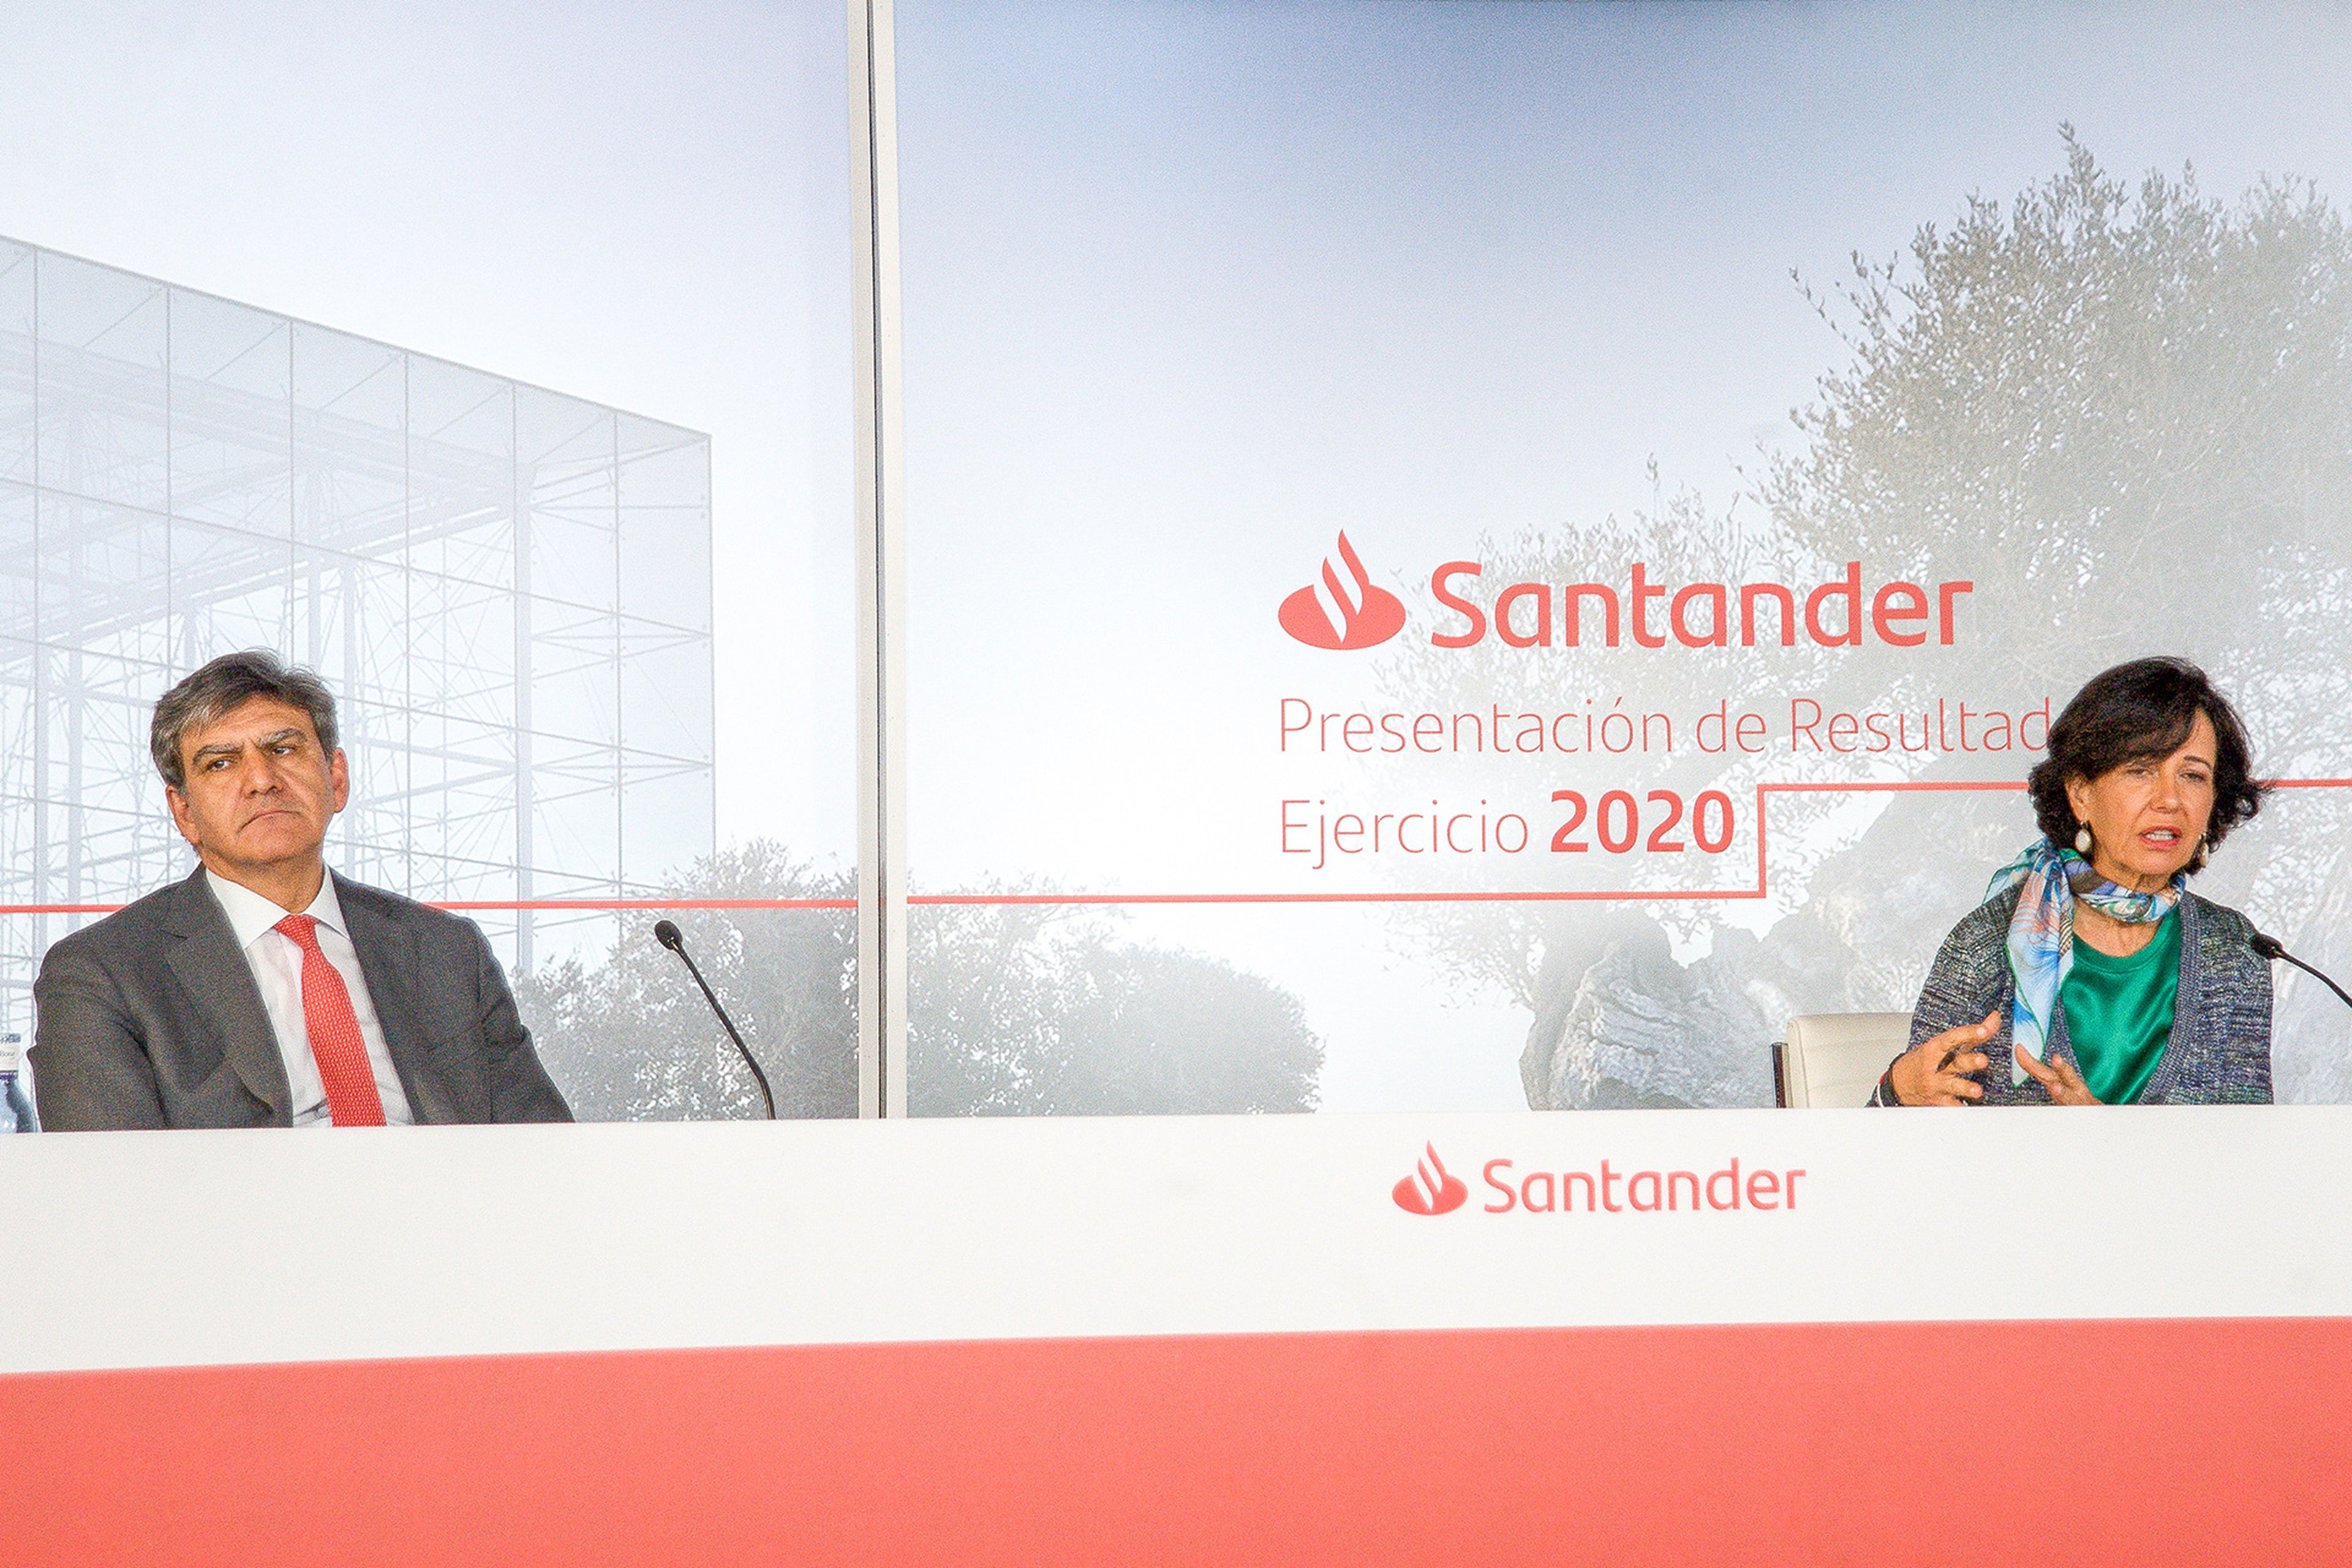 La llama del Santander se incorporó como logo en 1986 (Banco Santander)